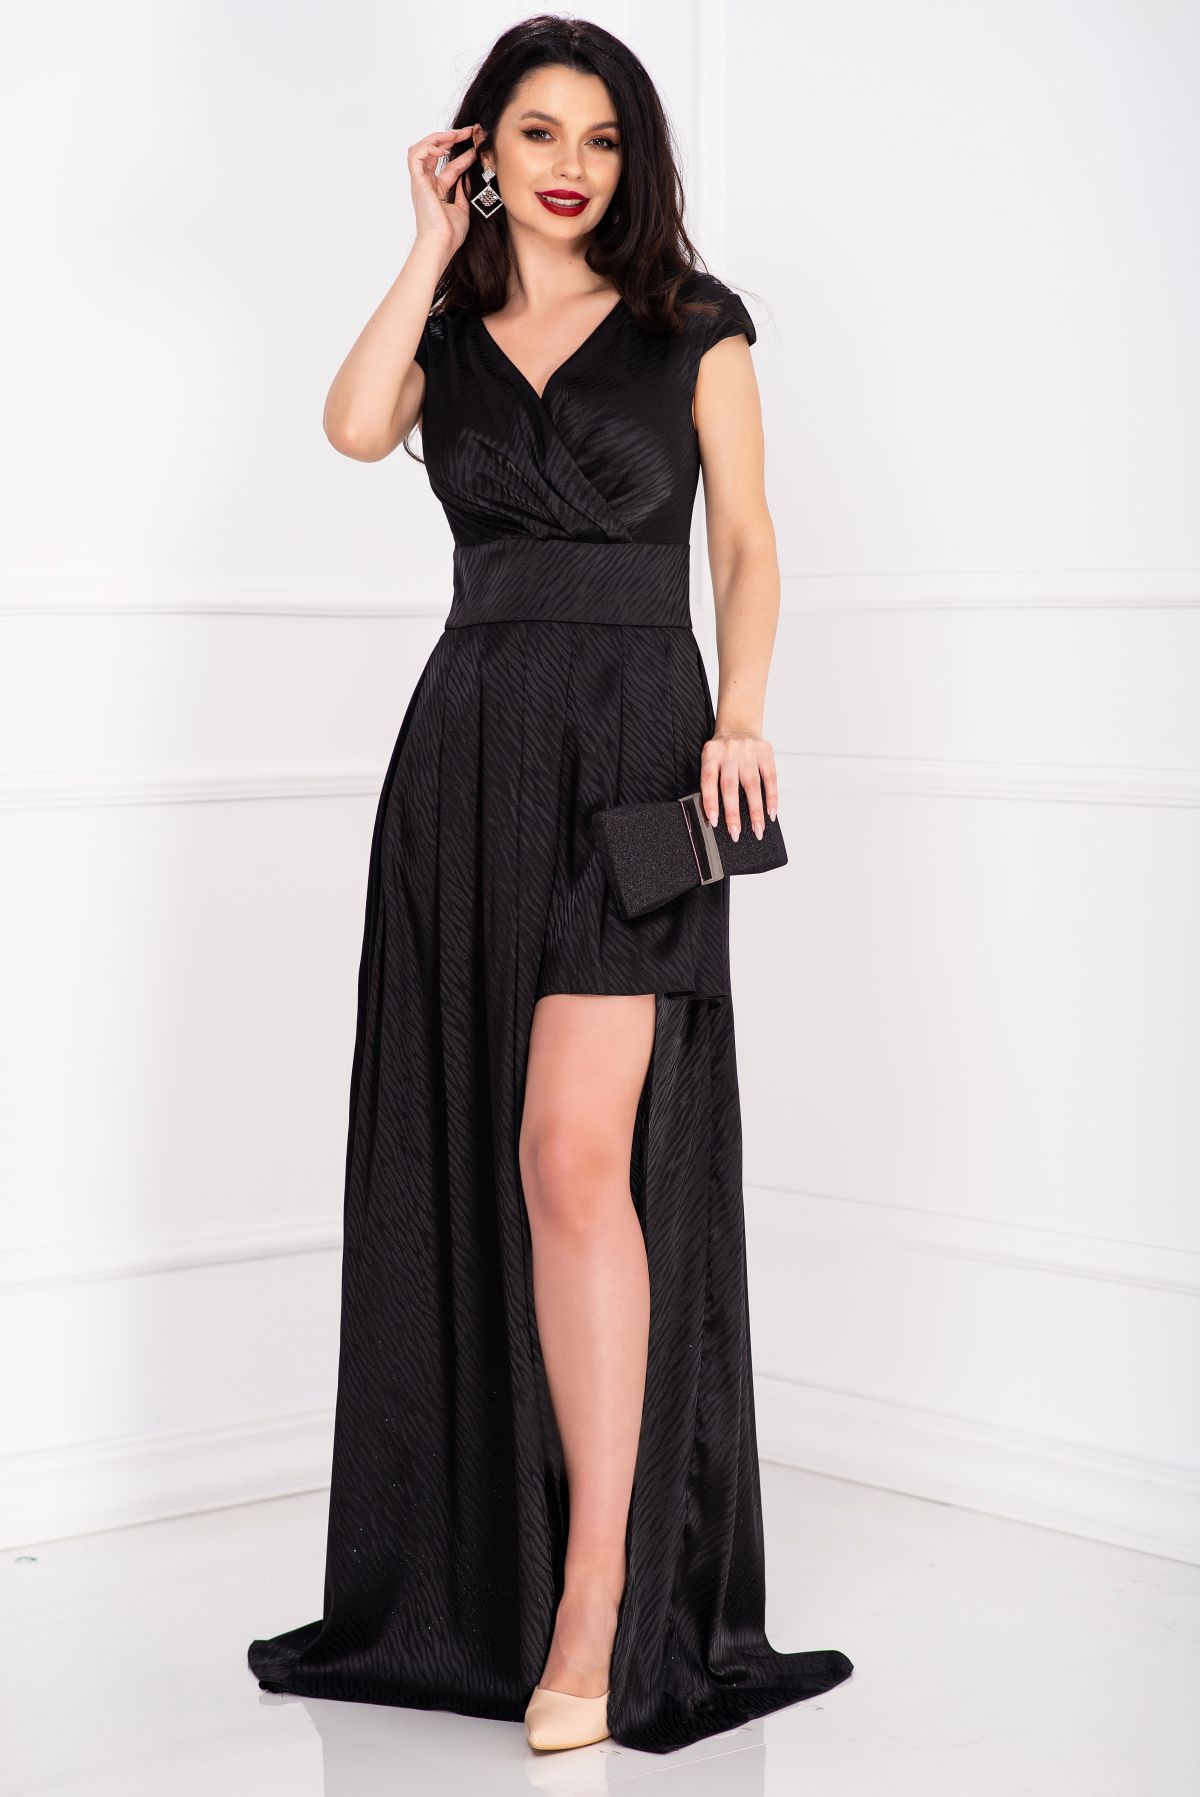 Rochie eleganta neagra dungata cu decupaj pe picior image14